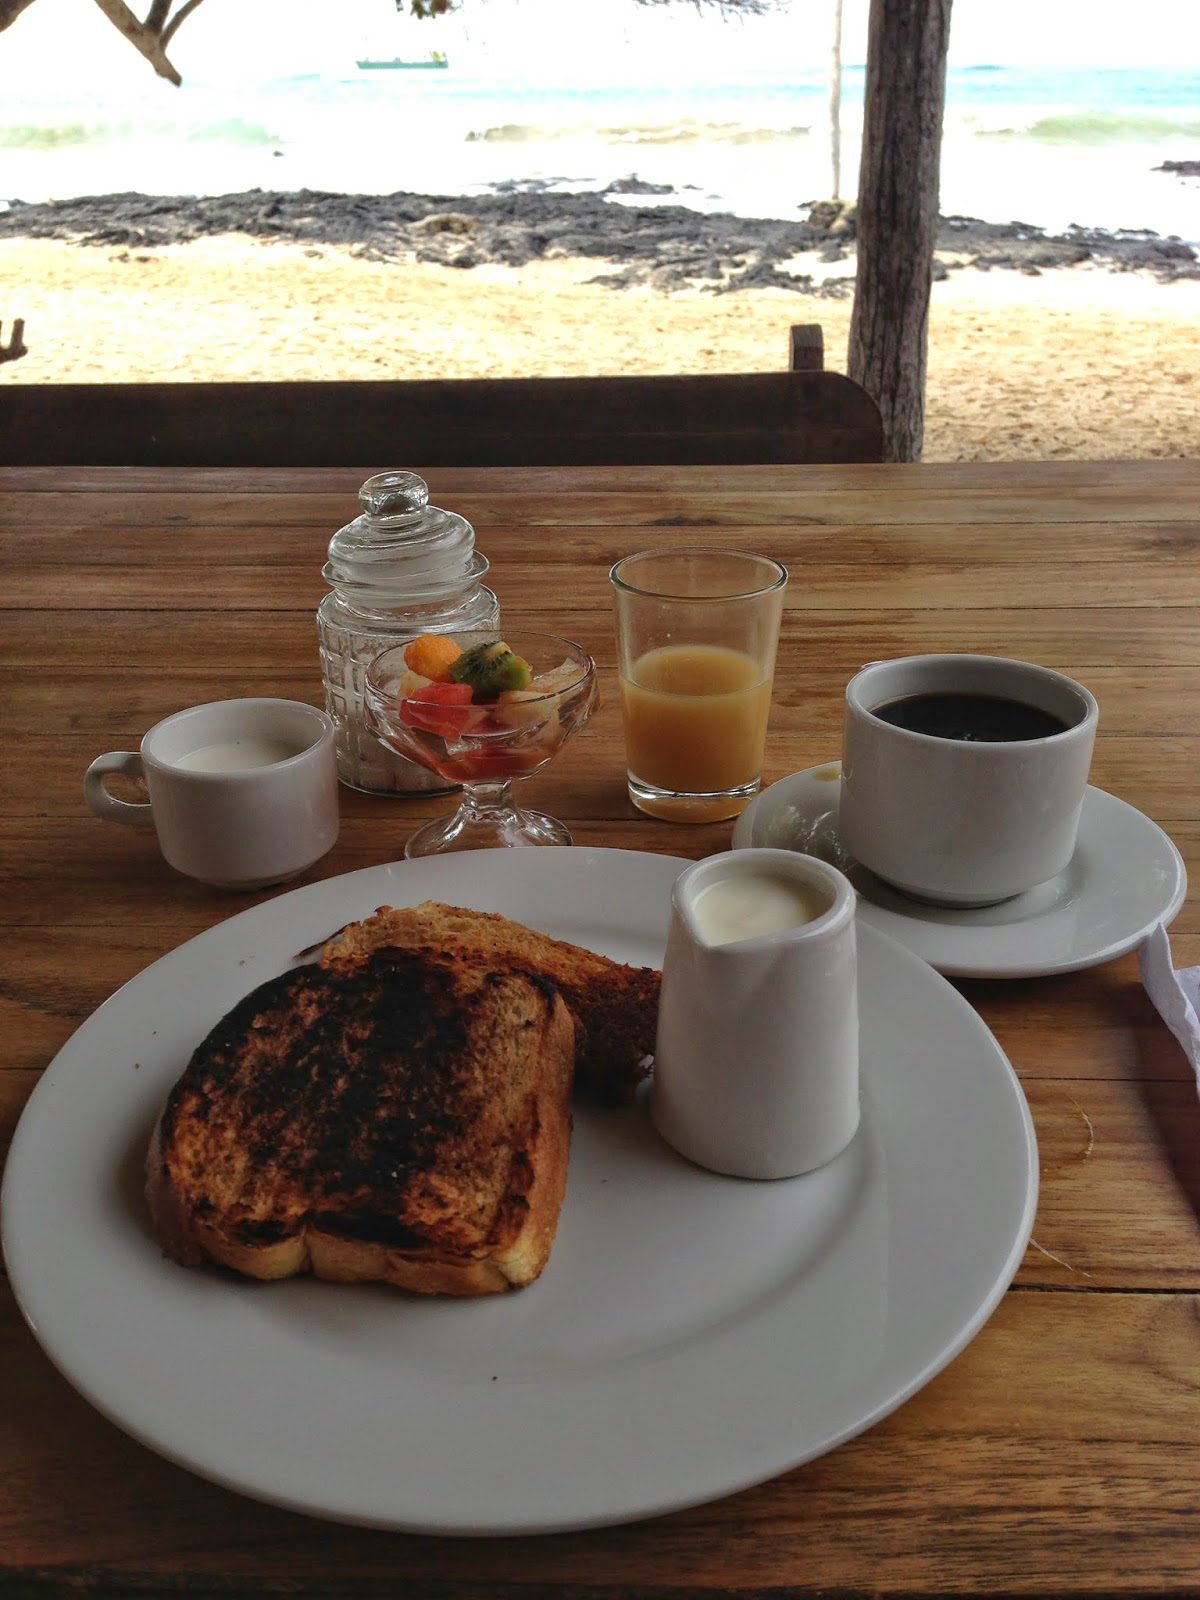 今天早上的菜单上有:法式吐司、水果杯、酸奶和蜂蜜、新鲜木瓜汁和咖啡。可口。